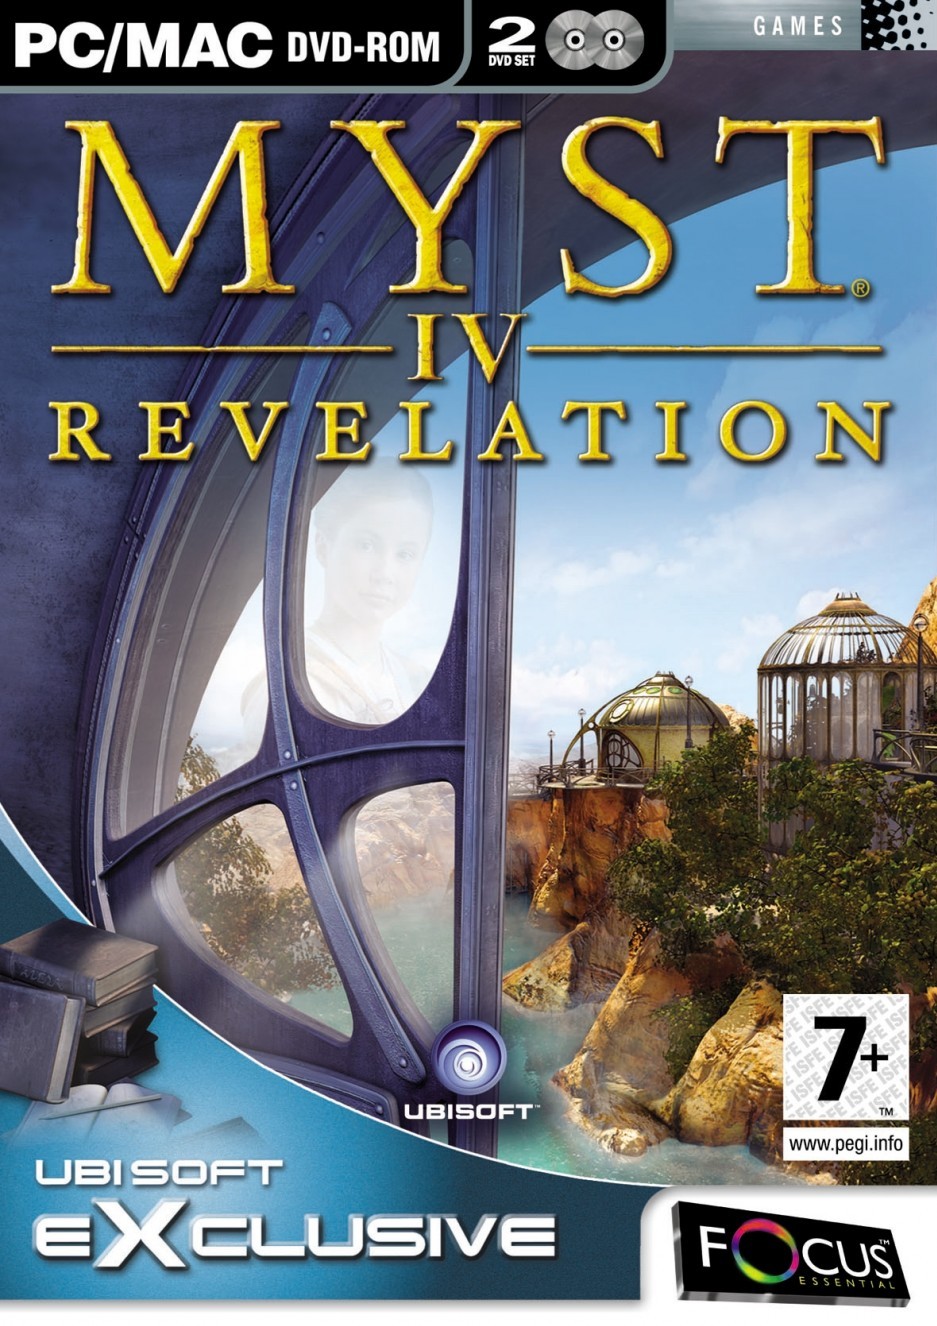 jaquette du jeu vidéo Myst IV: Revelation